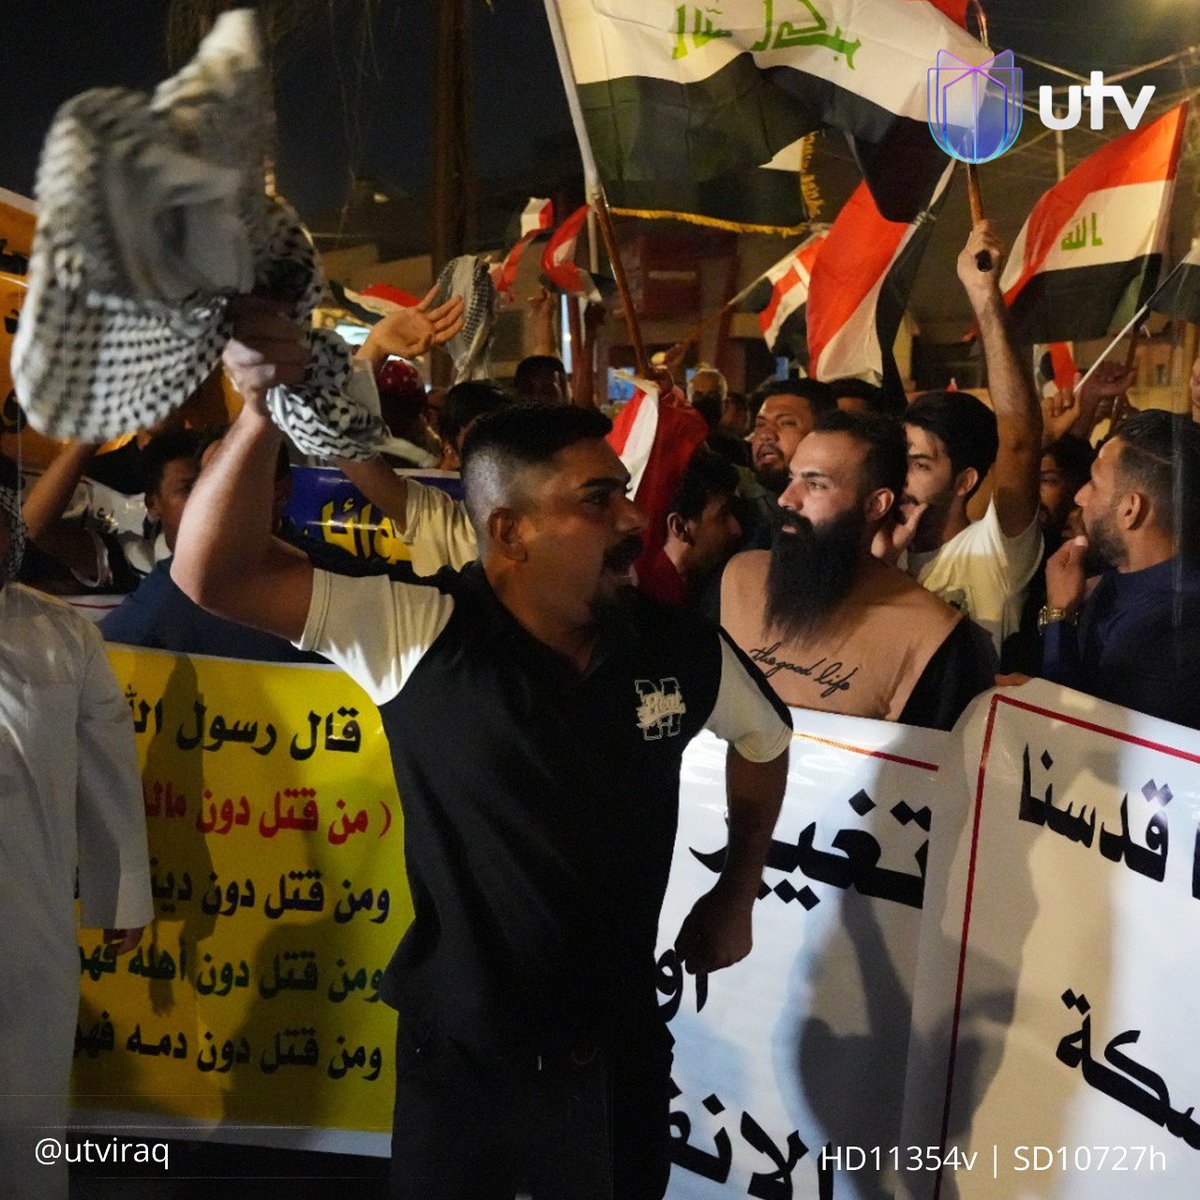 تظاهرة أمام القنصلية الإيرانية في البصرة رفضا لمشروع الربط السككي بين العراق وإيران .